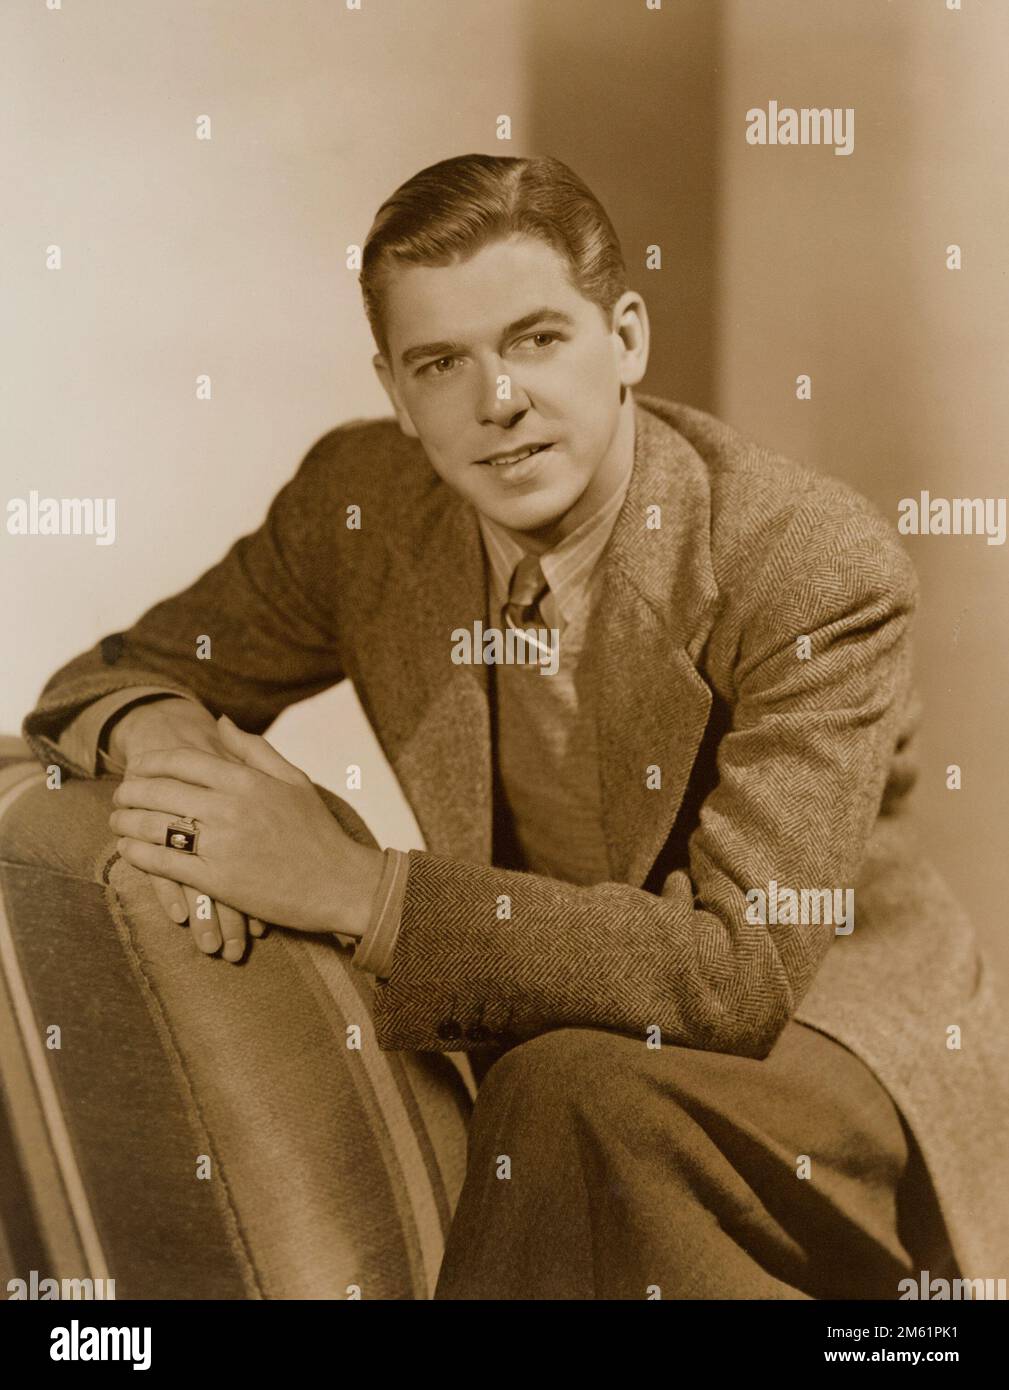 Ronald Reagan c 1940 (die Schauspielerjahre) Sepia Stockfoto